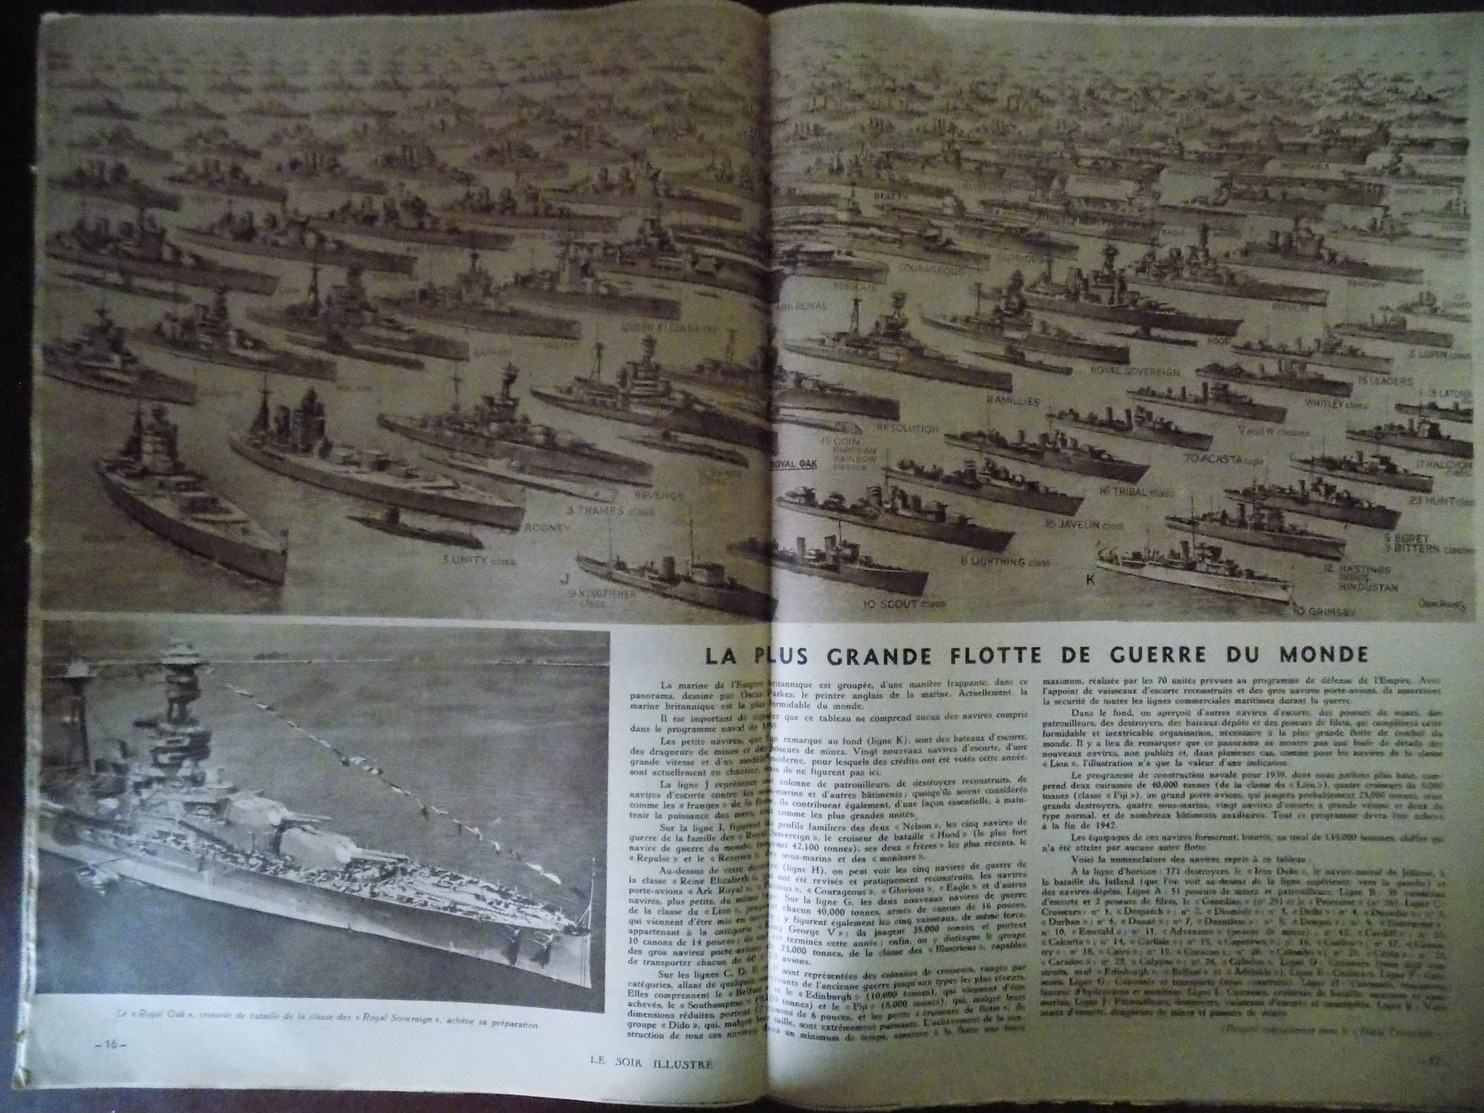 Le Soir Illustré n° 604 Winston Churchill - Athénia - puissance maritime de l'empire britannique - aube rouge guerre...